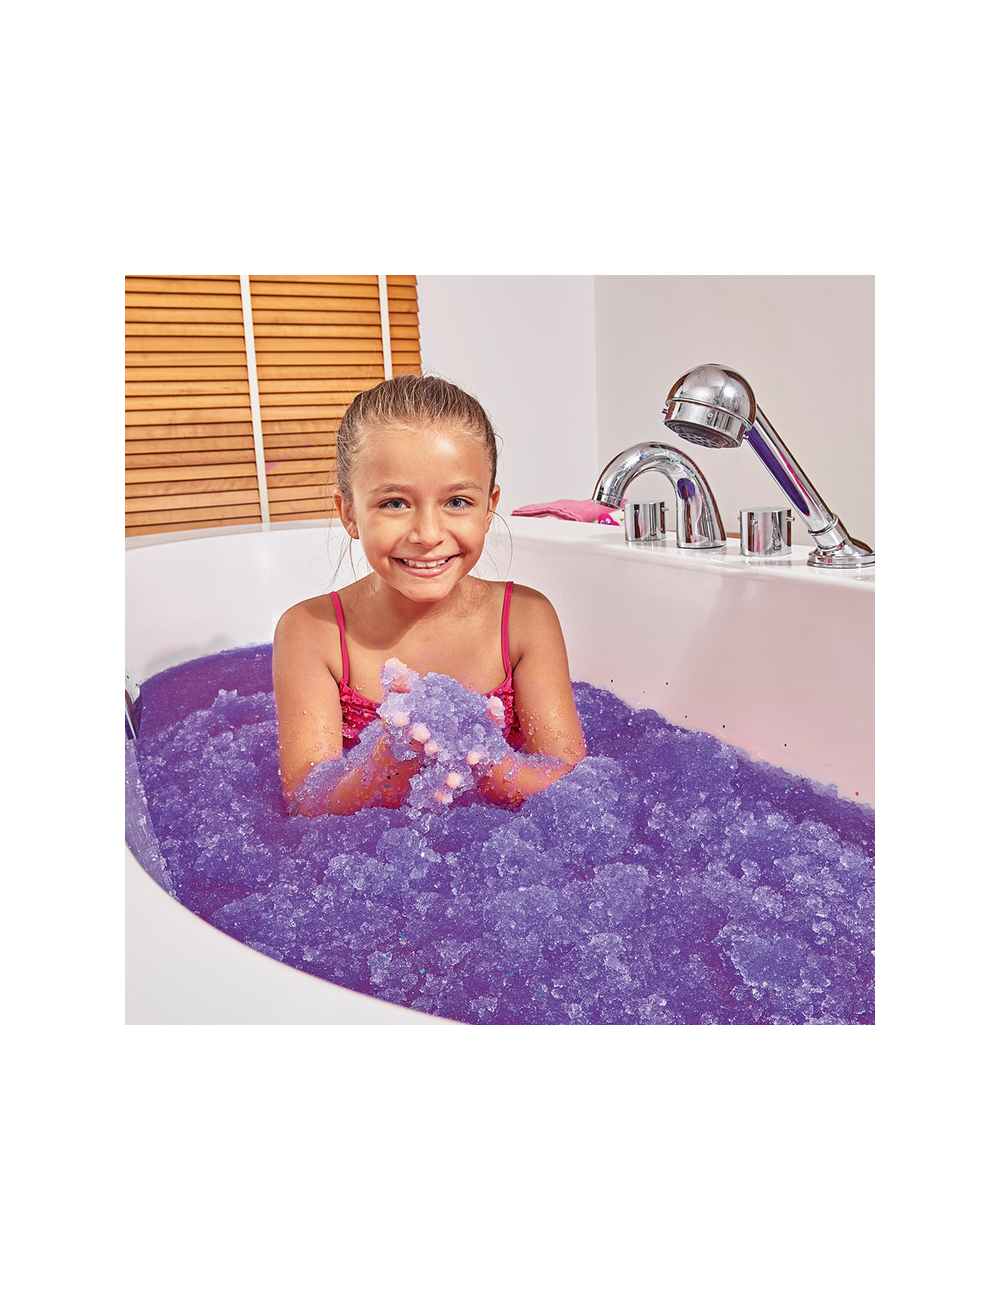 Magiczny proszek do kąpieli Gelli Baff Glitter fioletowy i błękitny, Zimpli Kids